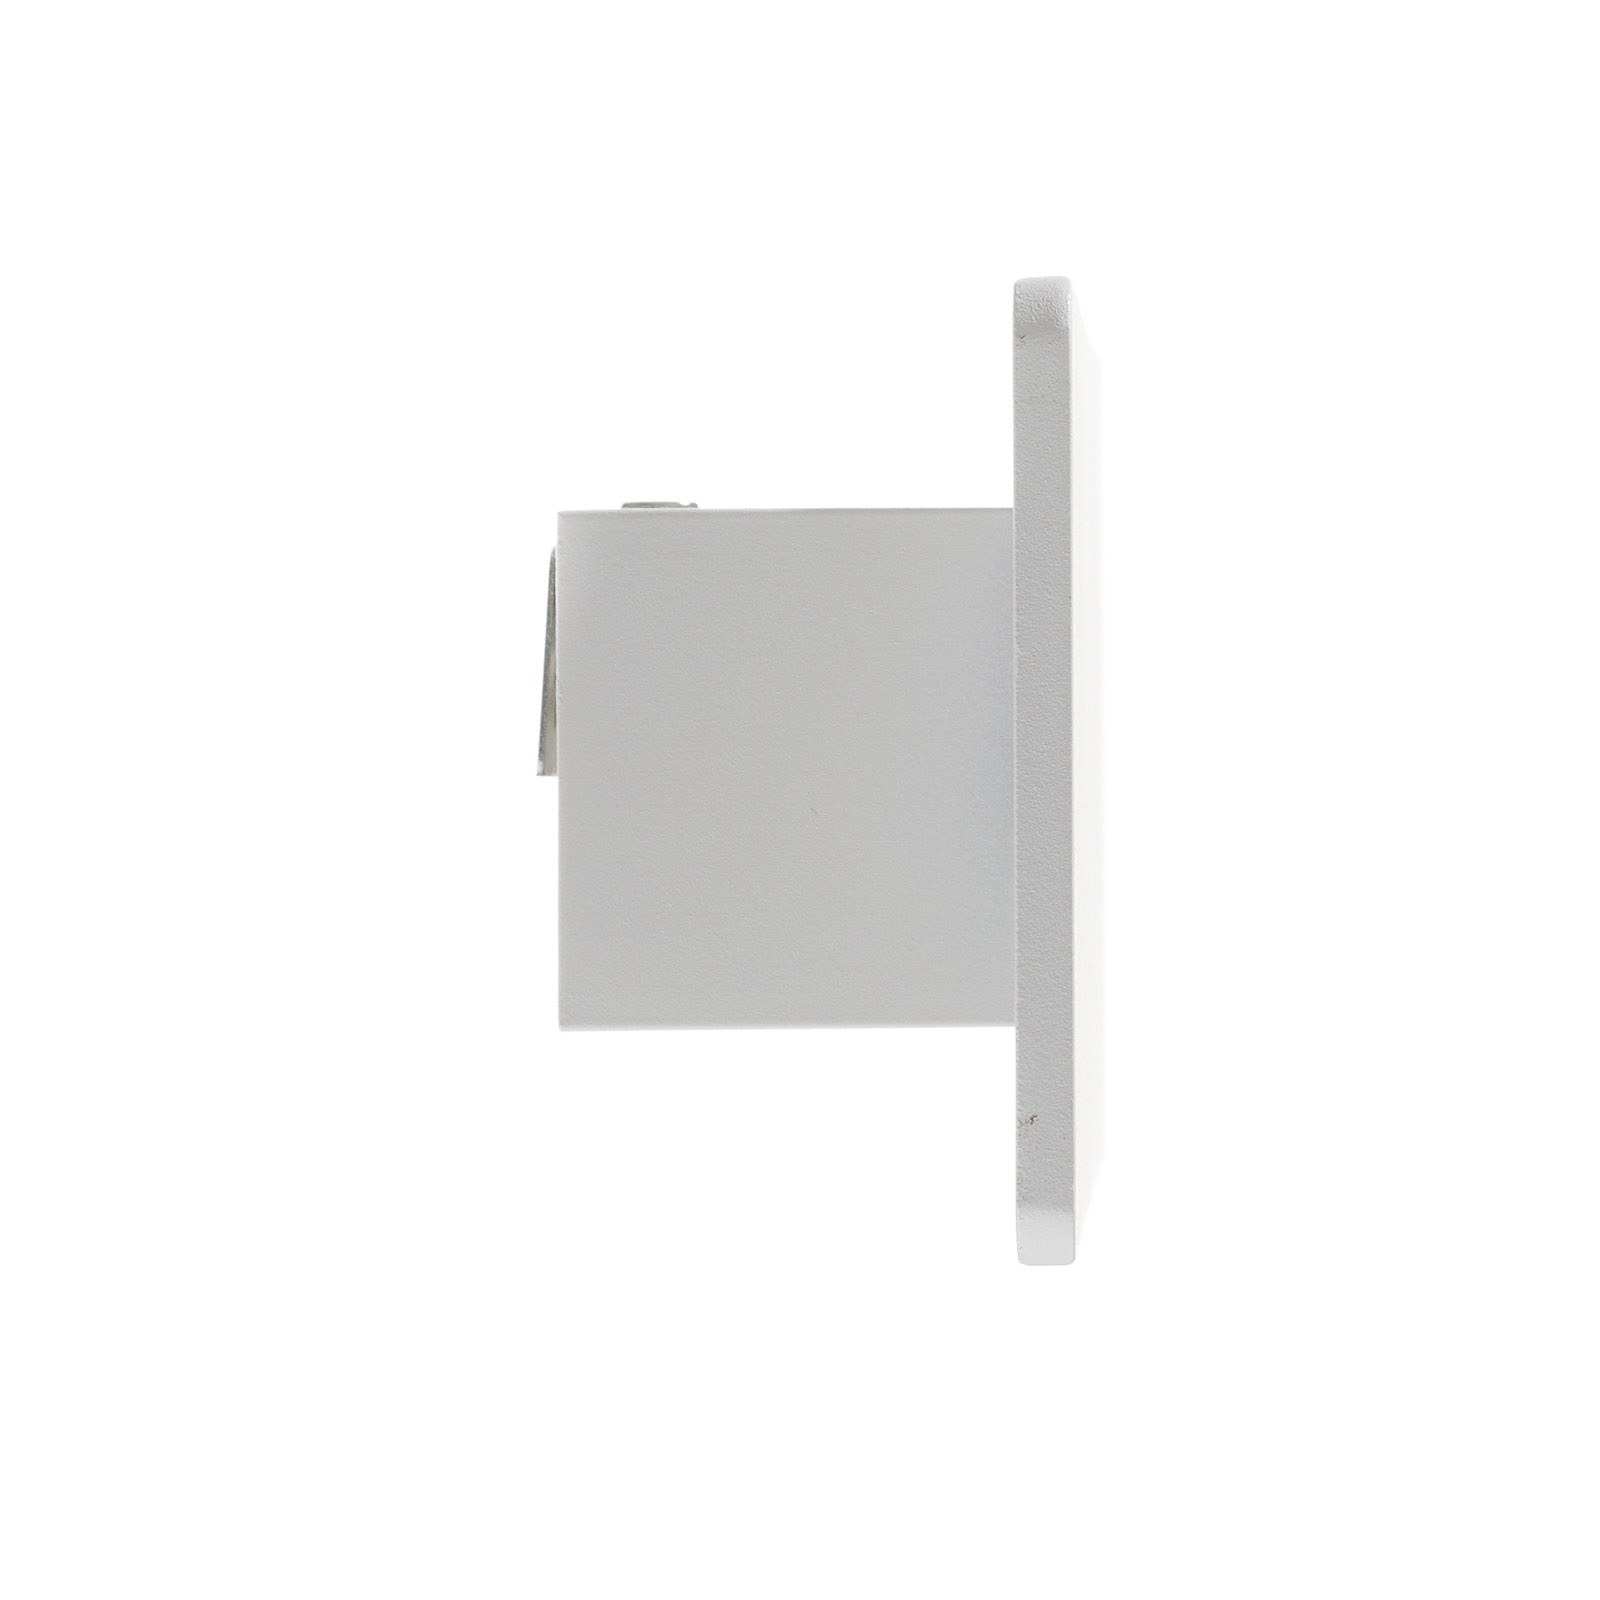 LED nástěnné světlo Zig Zag bílá, šířka 29 cm